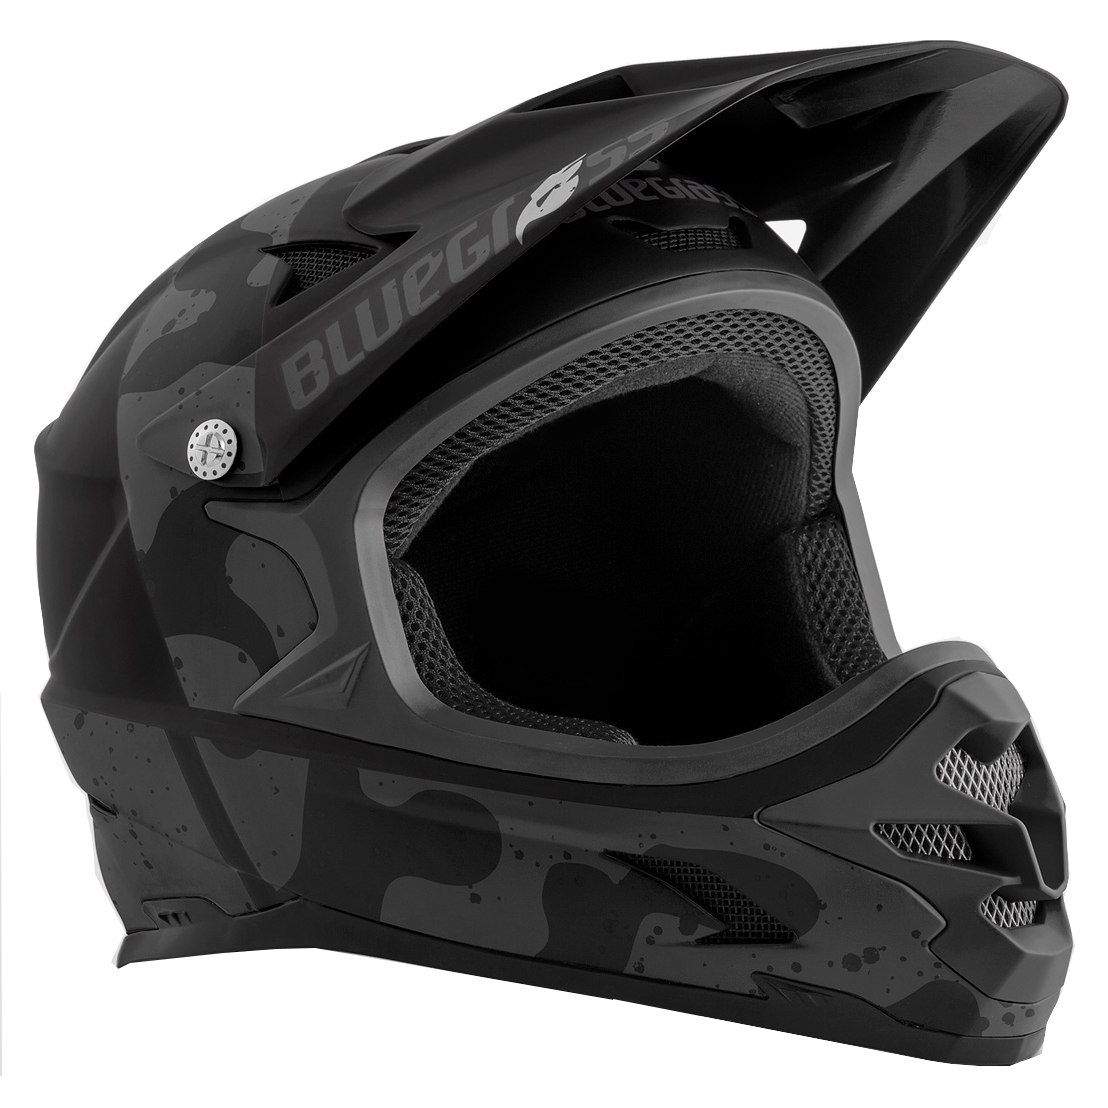 Productfoto van Bluegrass Intox Fullface Bike Helmet - camo black